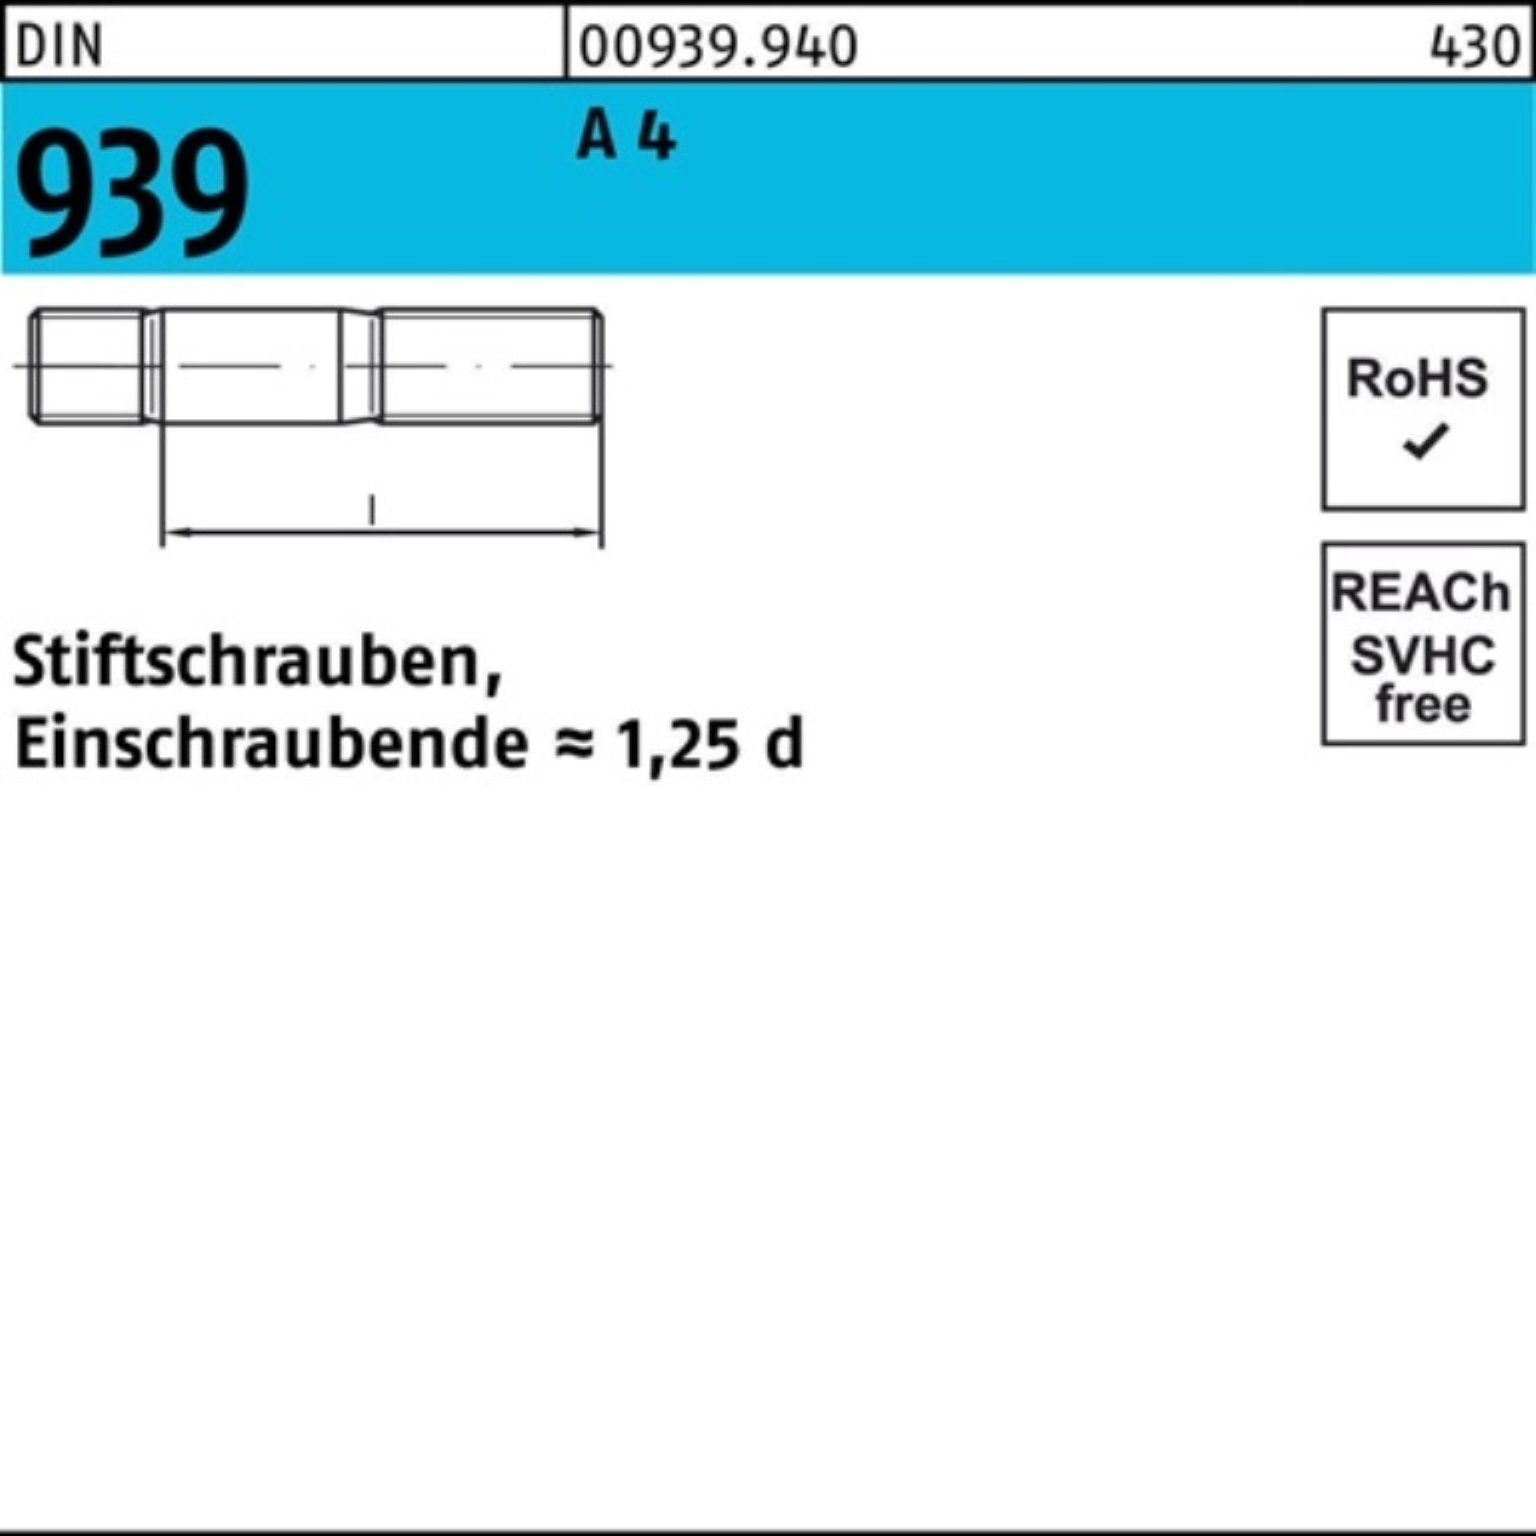 Reyher Stiftschraube 100er Pack Stiftschraube 4 DIN 939 95 A Einschraubende=1,25d St M16x 1